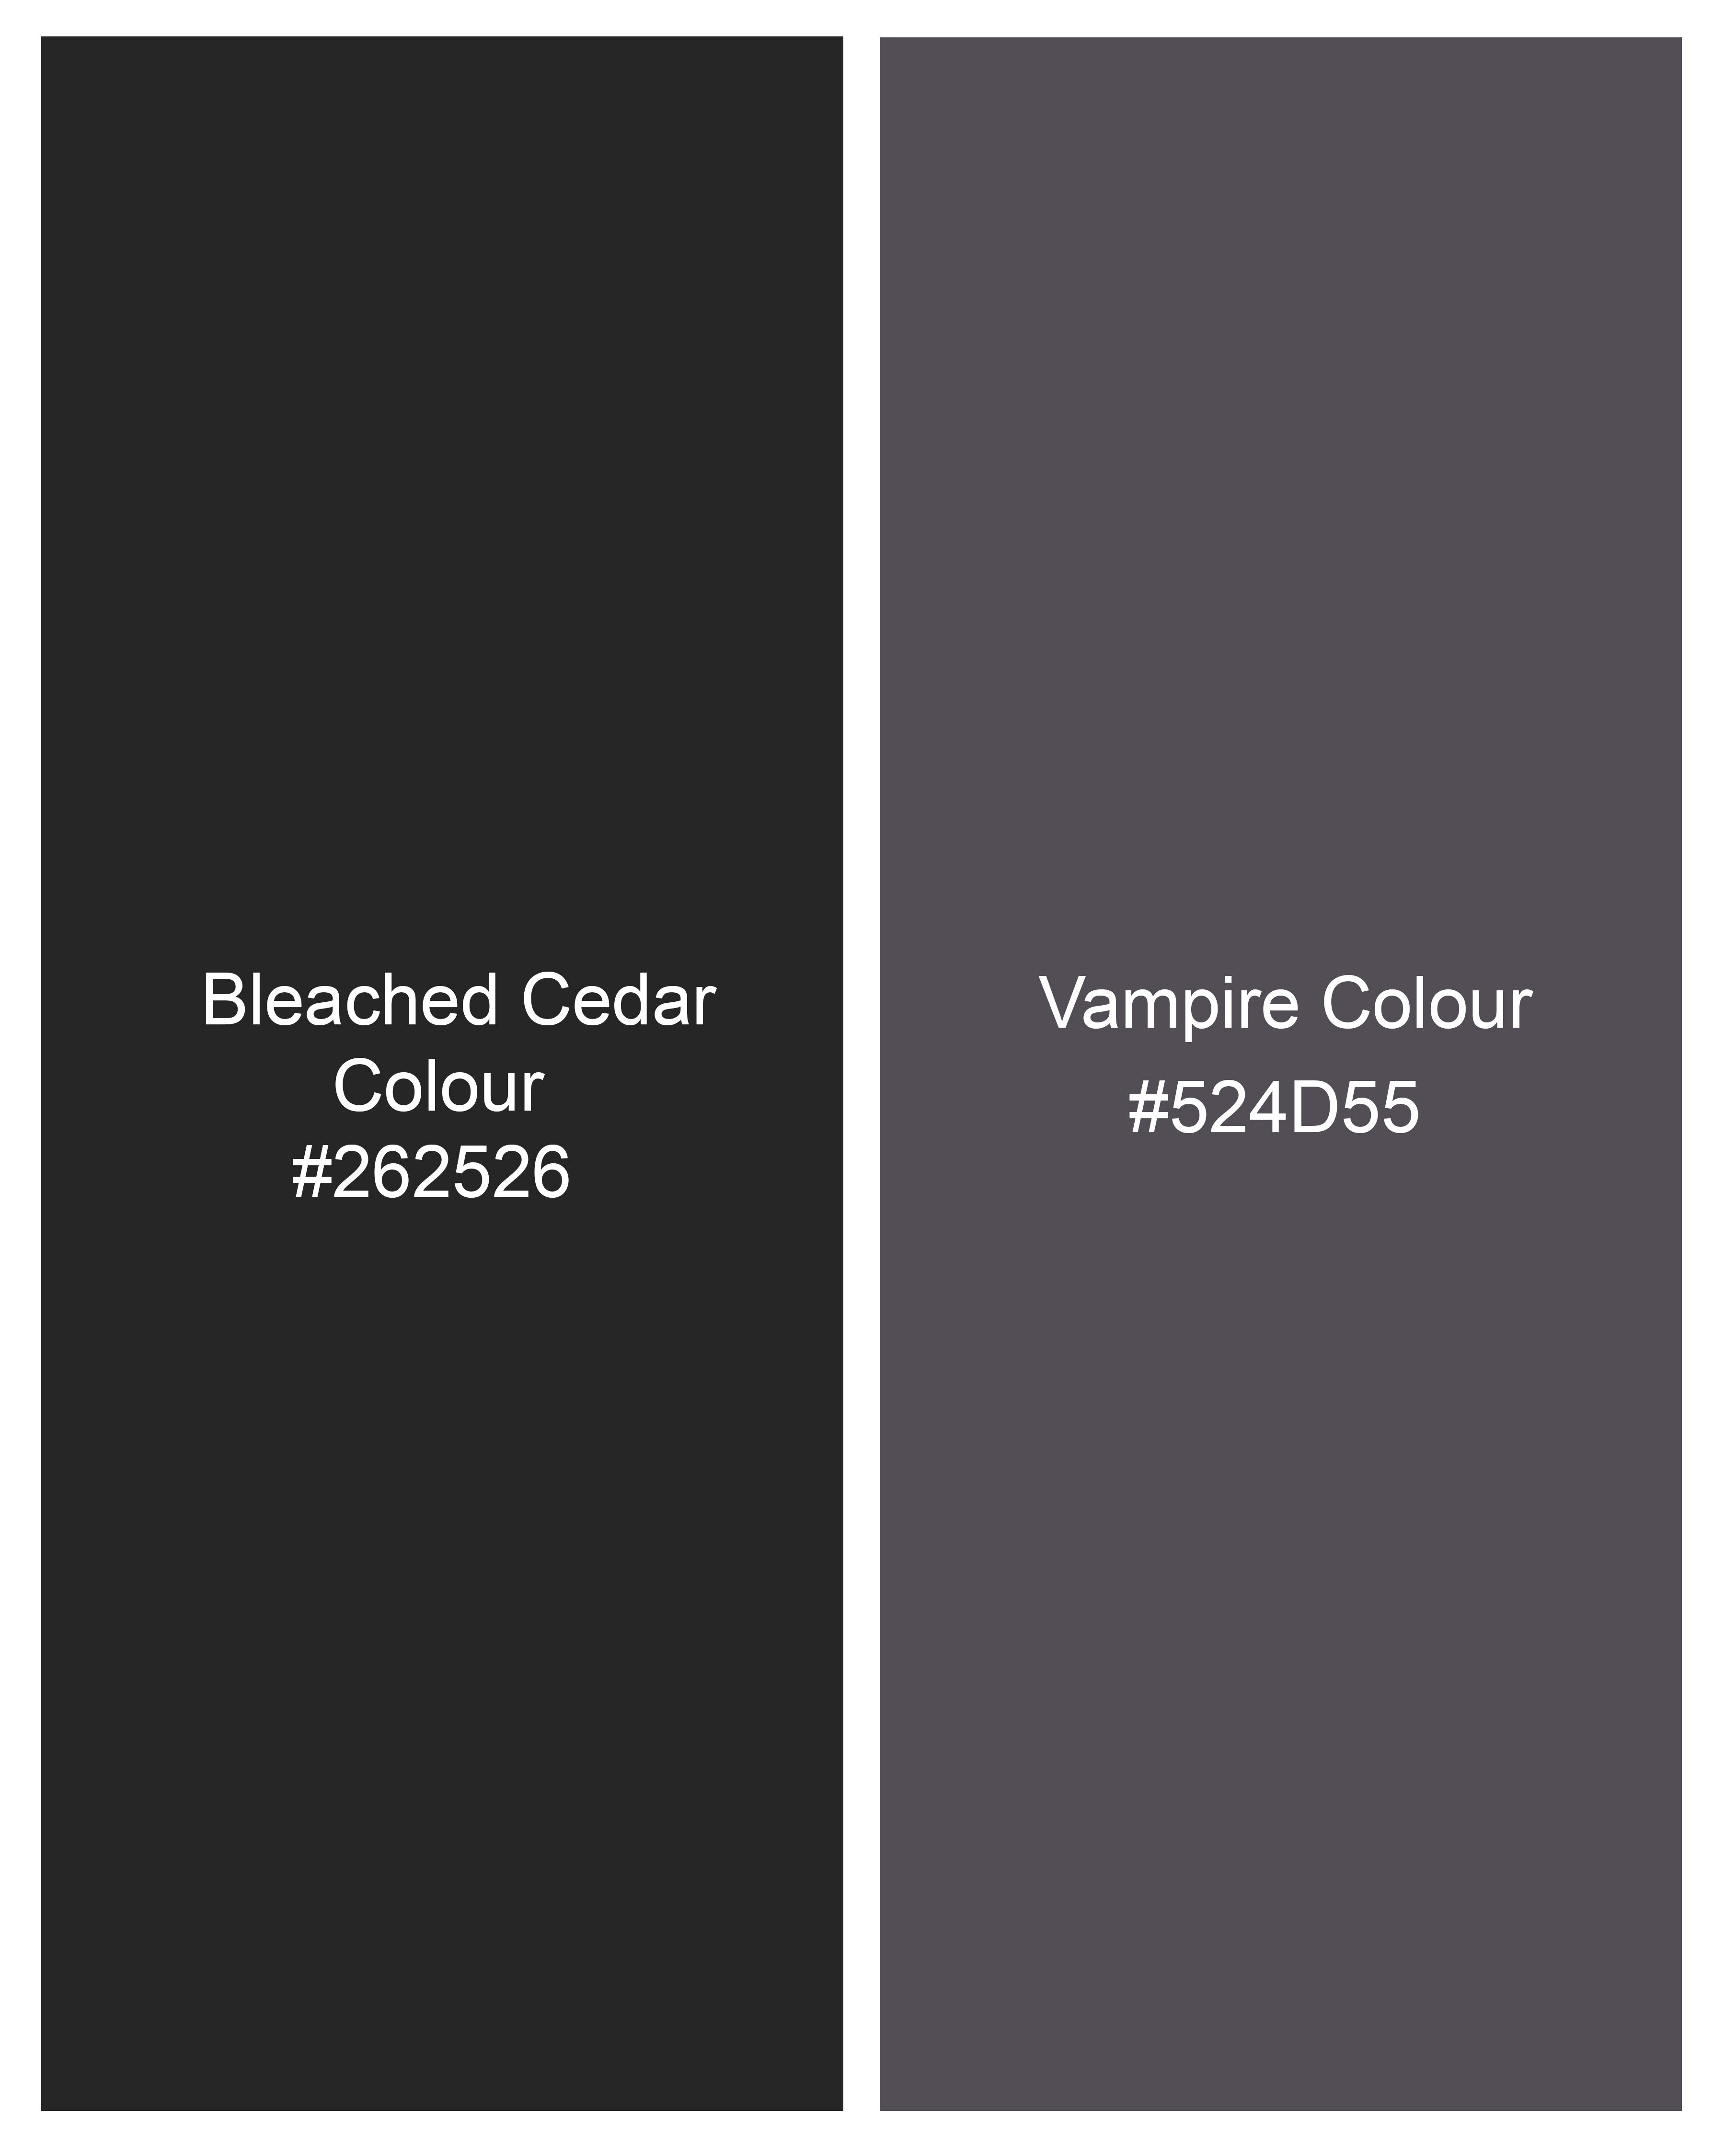 Bleached Cedar Black Plaid Waistcoat V2294-36, V2294-38, V2294-40, V2294-42, V2294-44, V2294-46, V2294-48, V2294-50, V2294-52, V2294-54, V2294-56, V2294-58, V2294-60